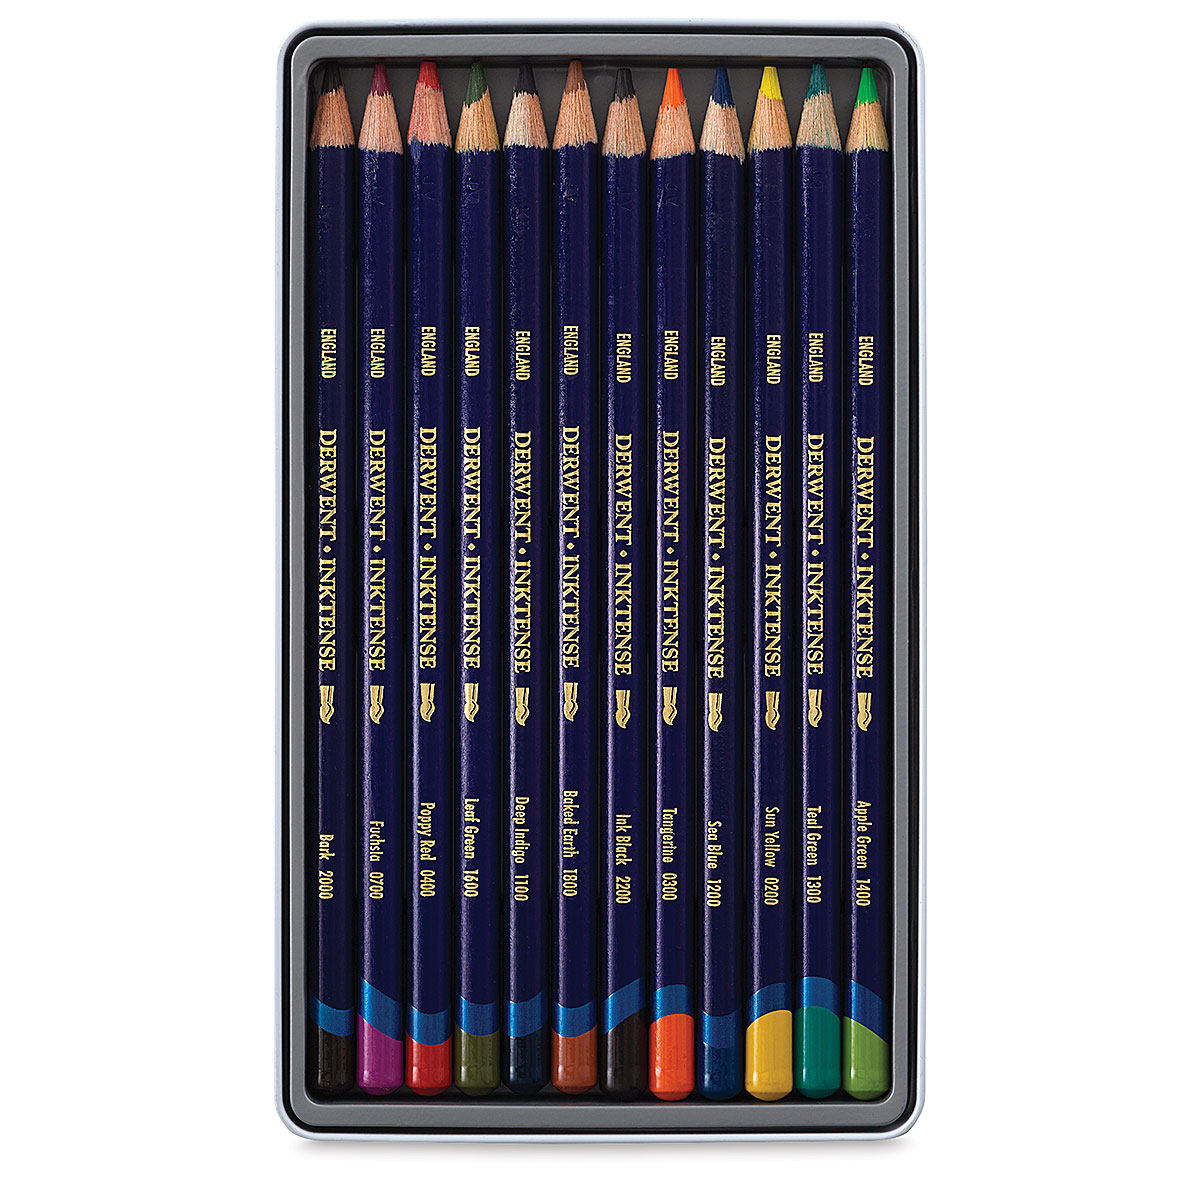 Derwent Inktense Pencils 36/Pkg- - 5028252260749